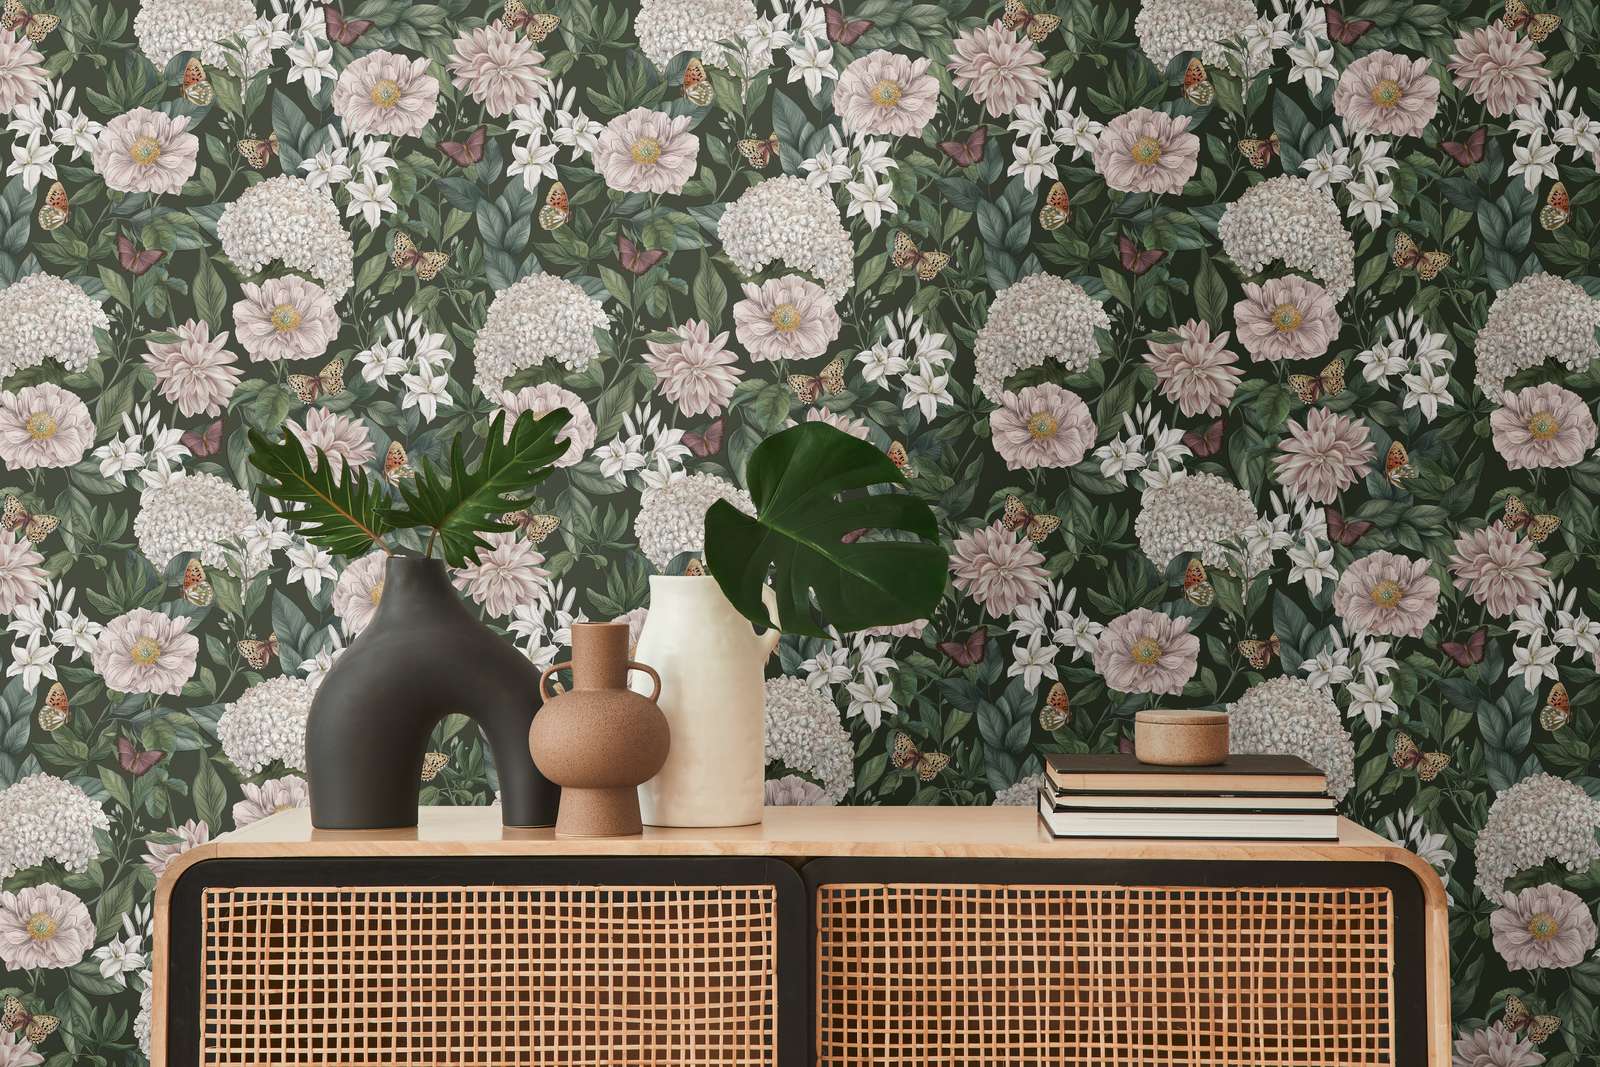             Moderne Tapete im floralen Stil mit Blumen & Schmetterlingen strukturiert – Schwarz, Dunkelgrün, Weiß
        